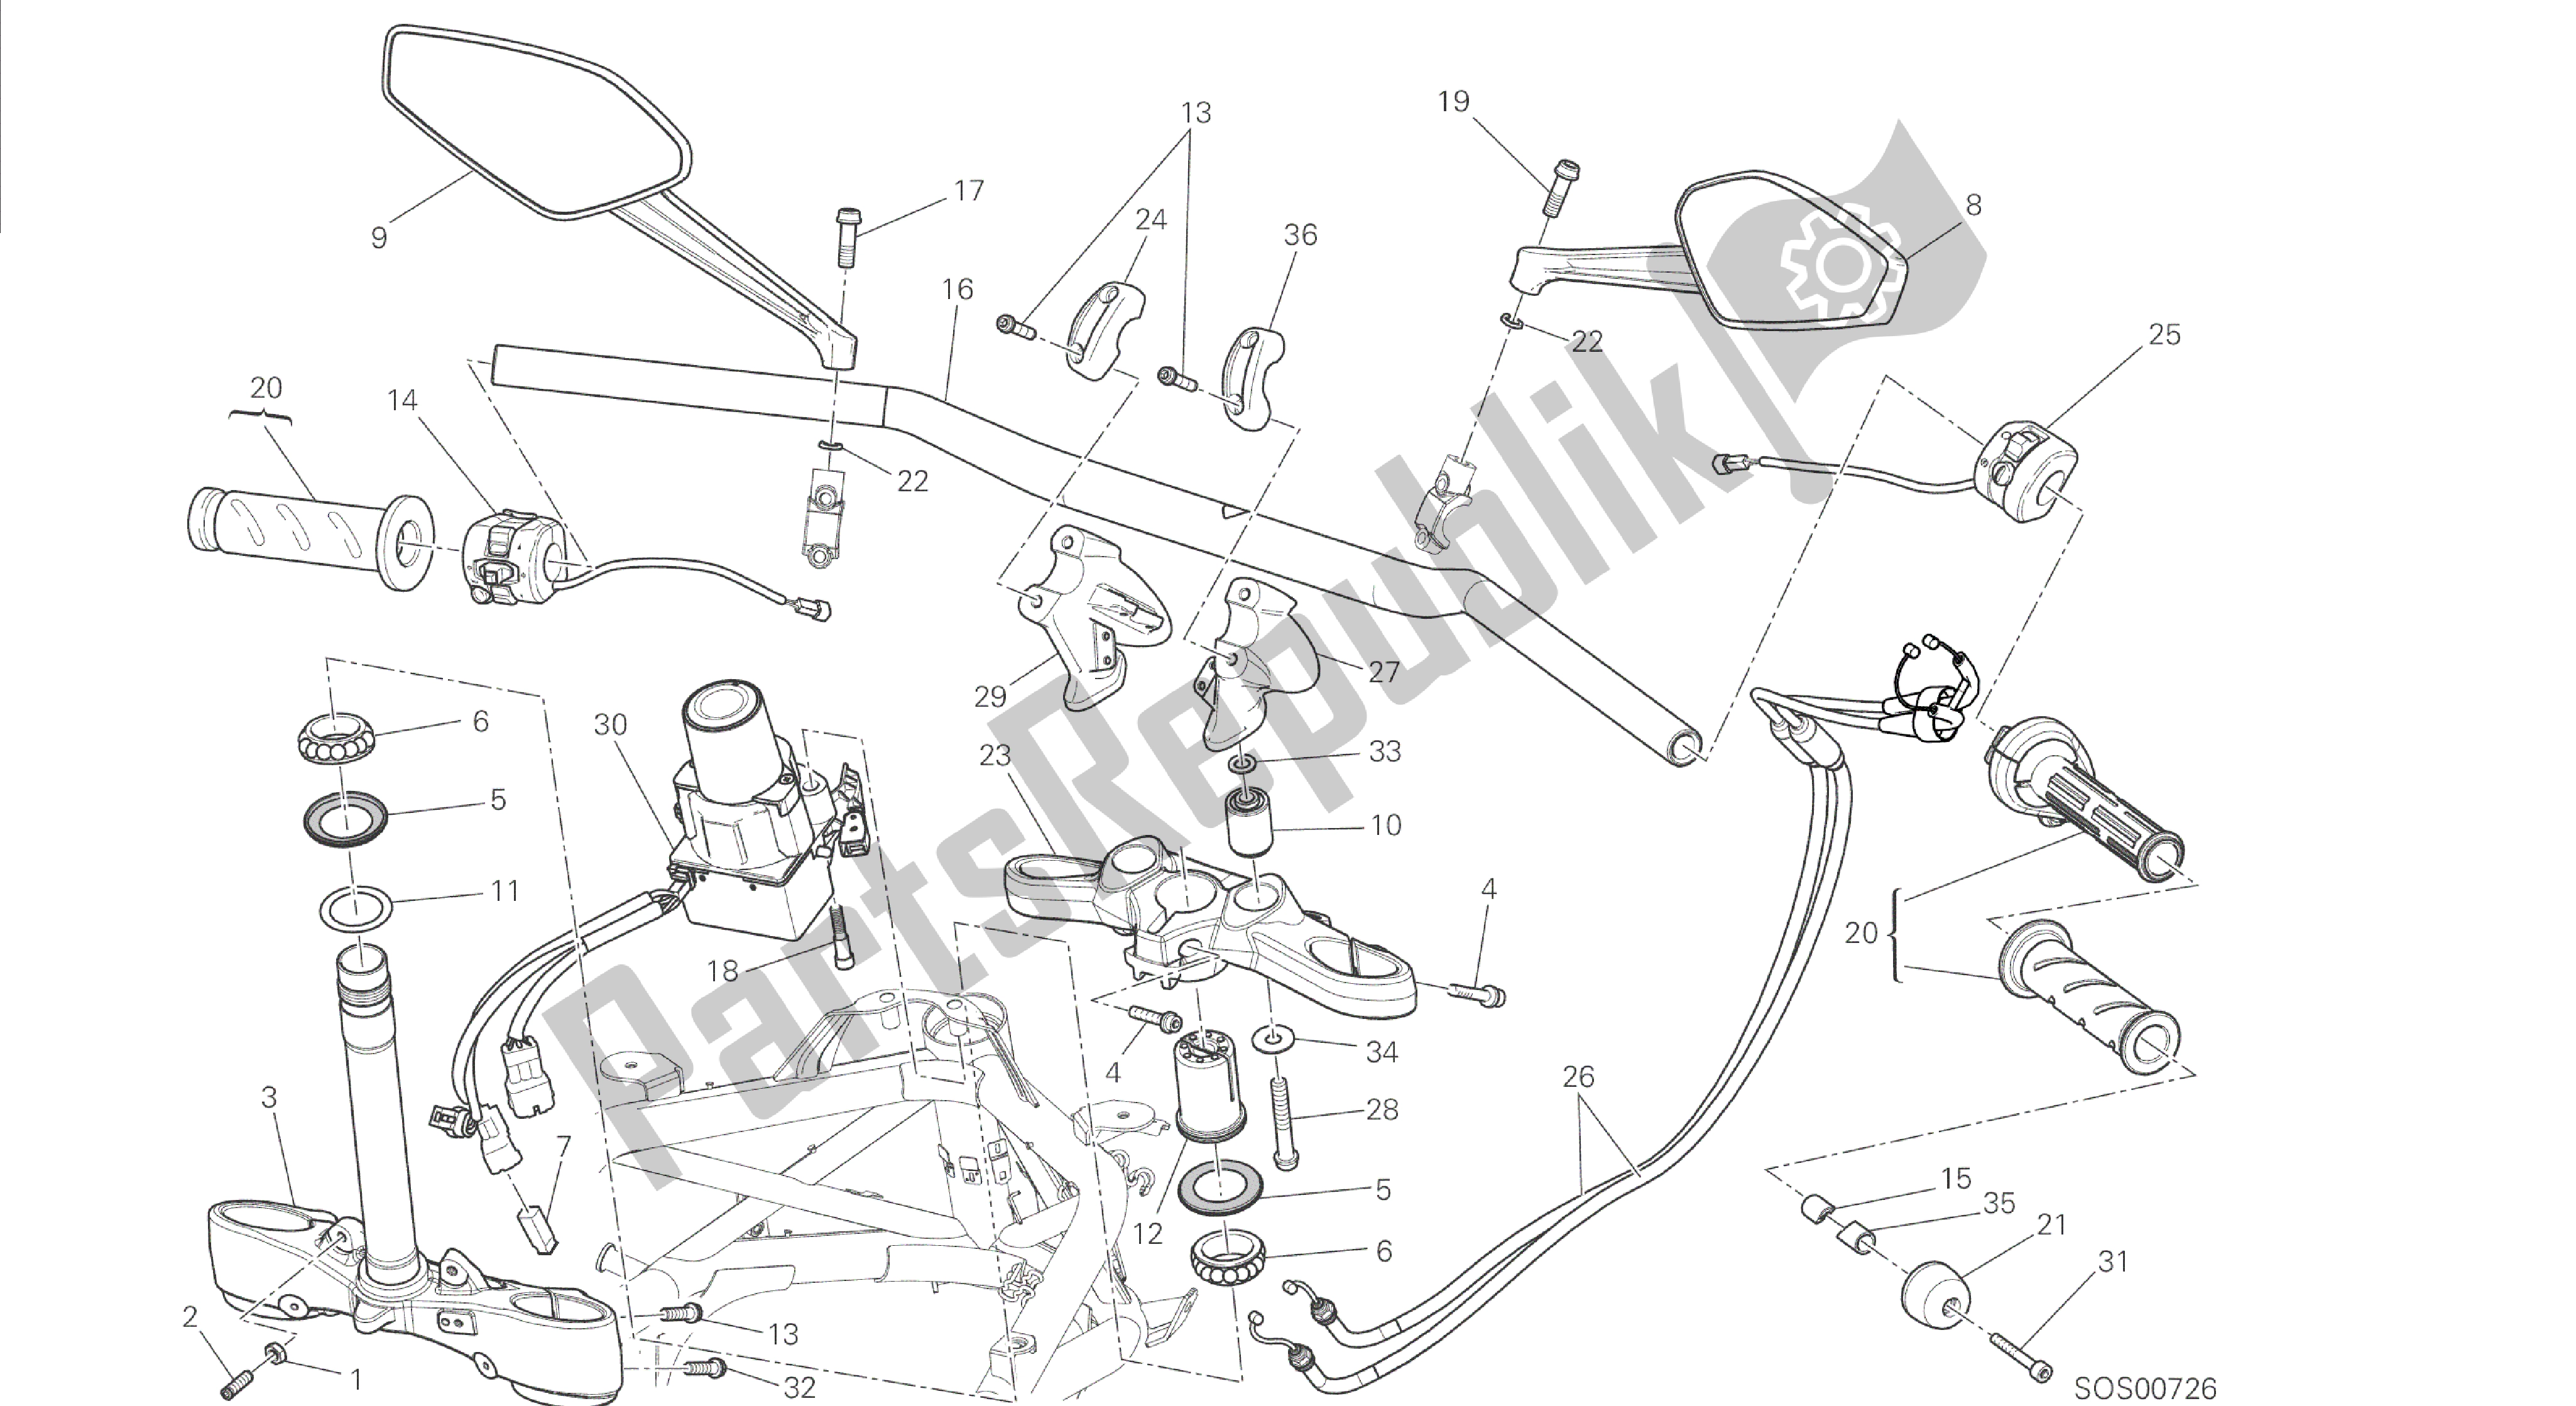 Tutte le parti per il Disegno 021 - Telaio Gruppo Manubrio [mod: Dvl] del Ducati Diavel 1200 2014